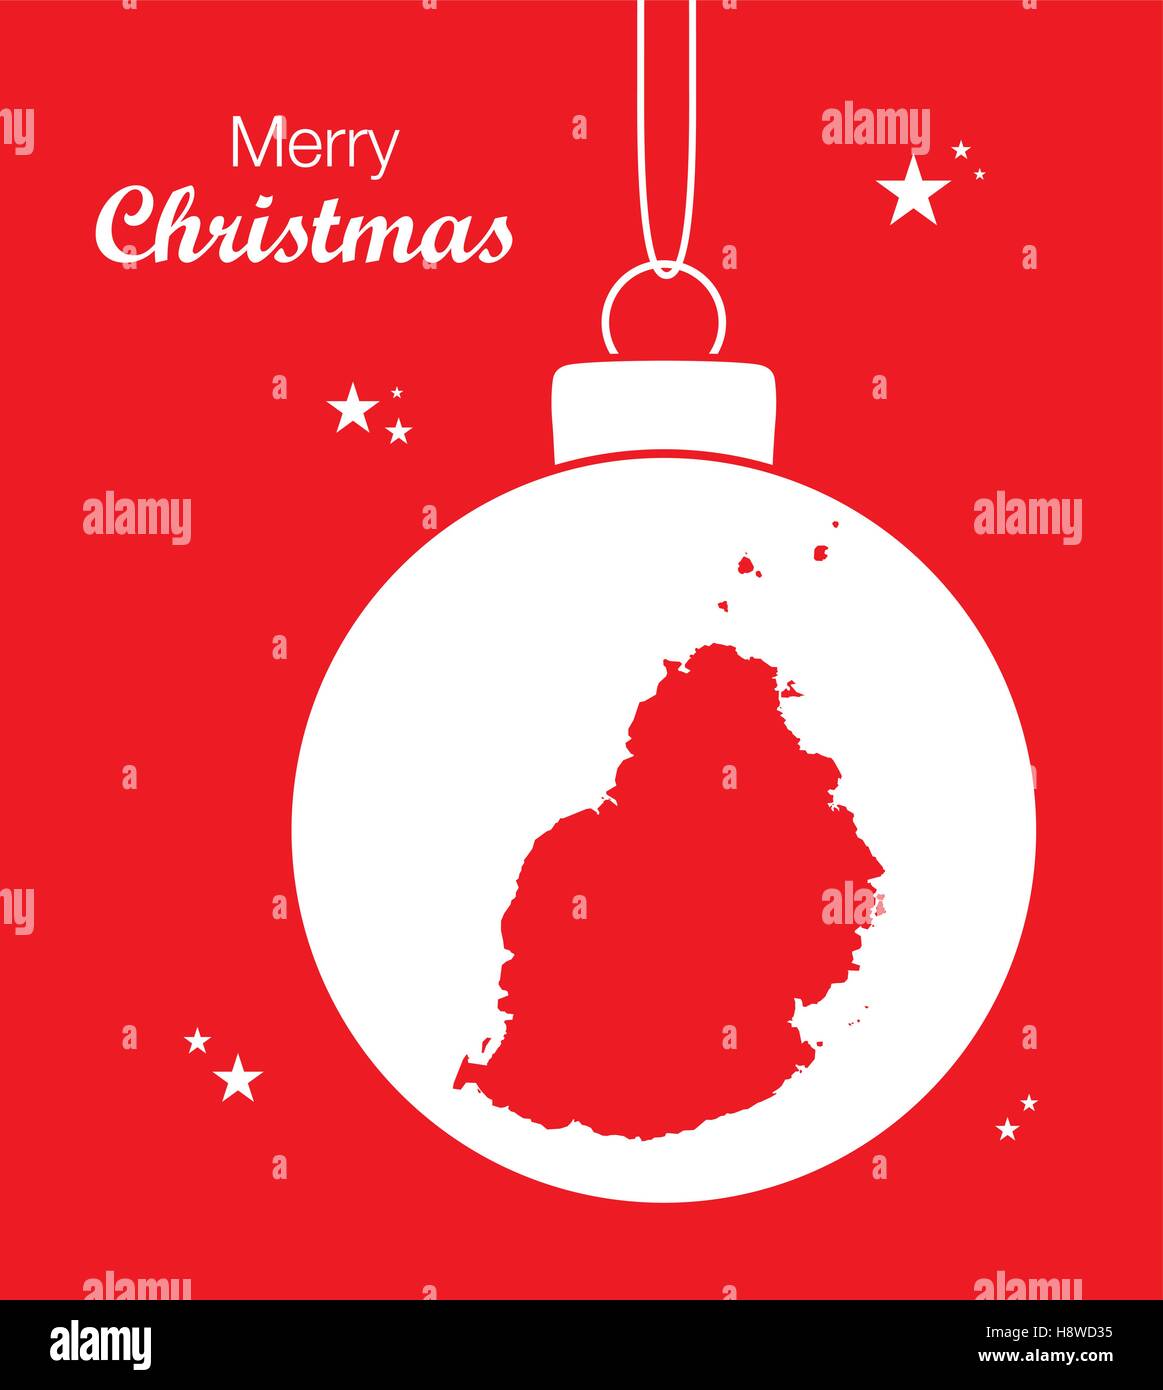 Frohe Weihnachten-Abbildung-Thema mit Karte von Mauritius  Stock-Vektorgrafik - Alamy